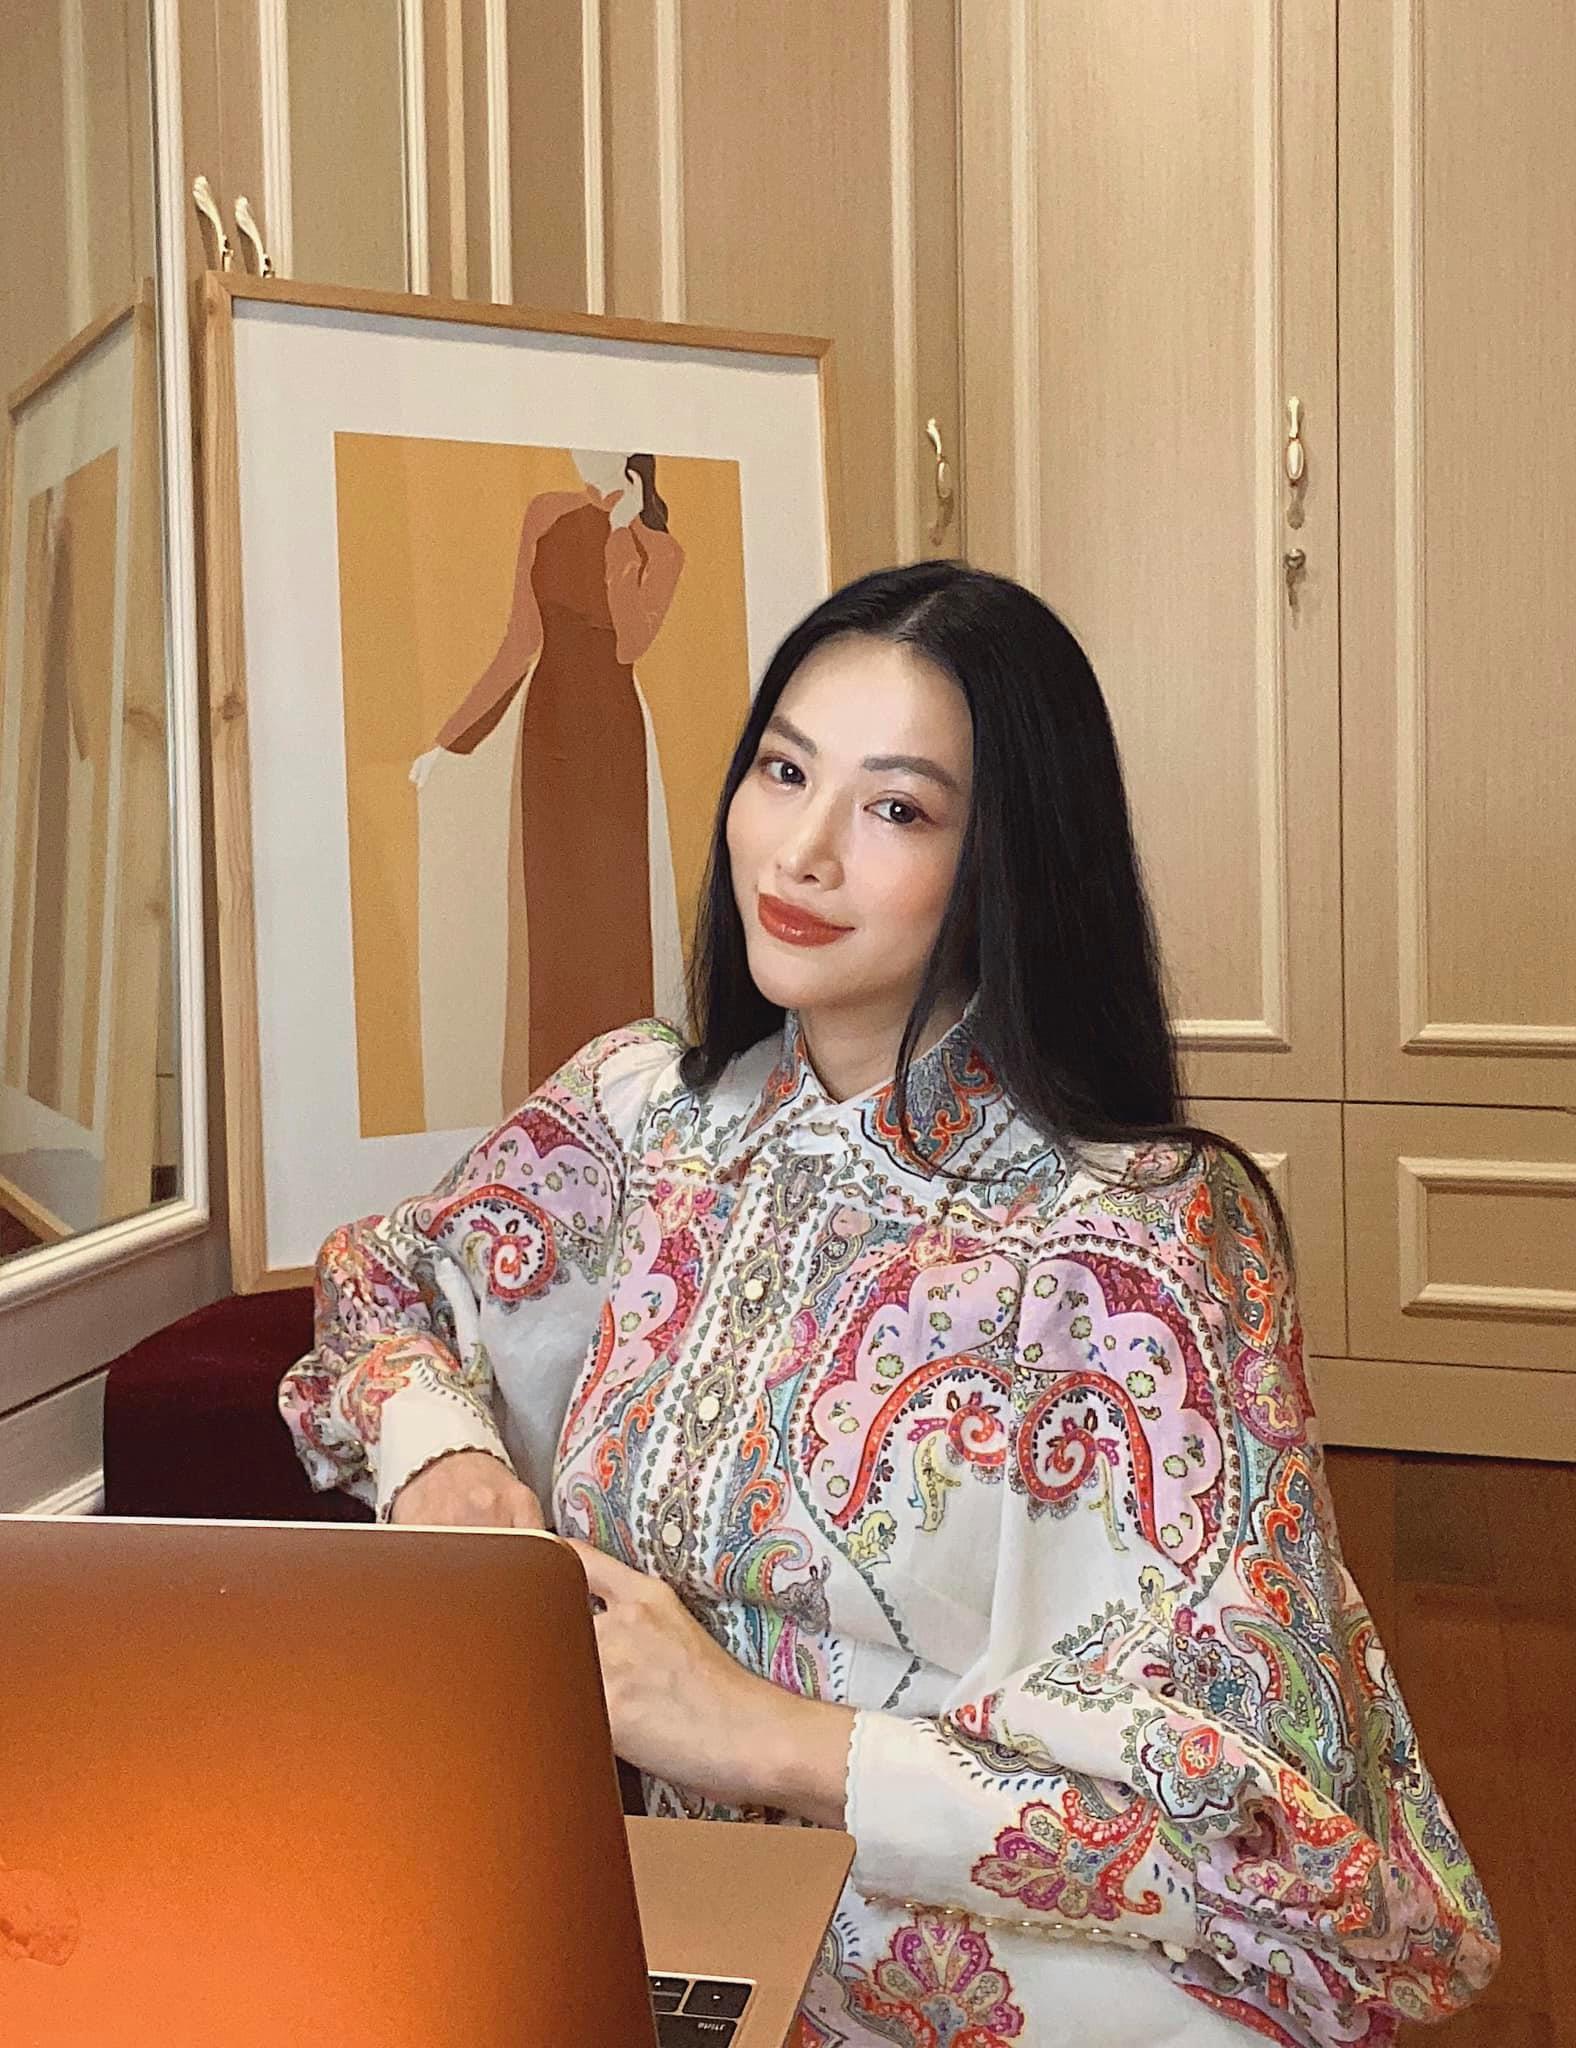 Hoa hậu Phương Khánh tự set up đèn, bàn, máy quay khi quay phỏng vấn tại nhà. Cô chia sẻ, dù trong hoàn cảnh nào cũng luôn cố gắng hoàn thành công việc một cách chỉn chu nhất.